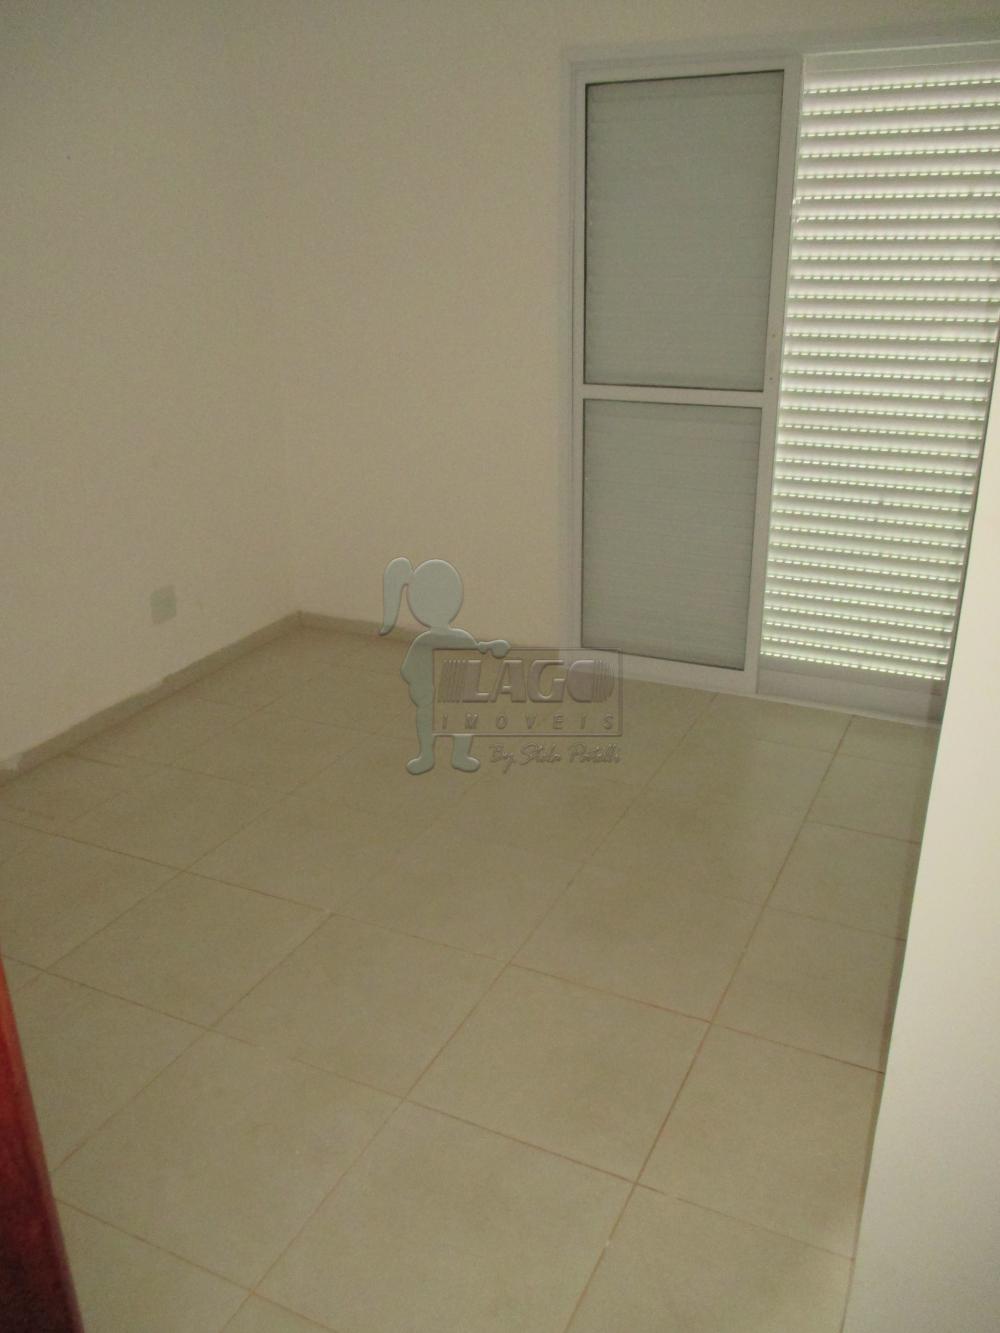 Alugar Apartamentos / Padrão em Ribeirão Preto R$ 1.450,00 - Foto 7